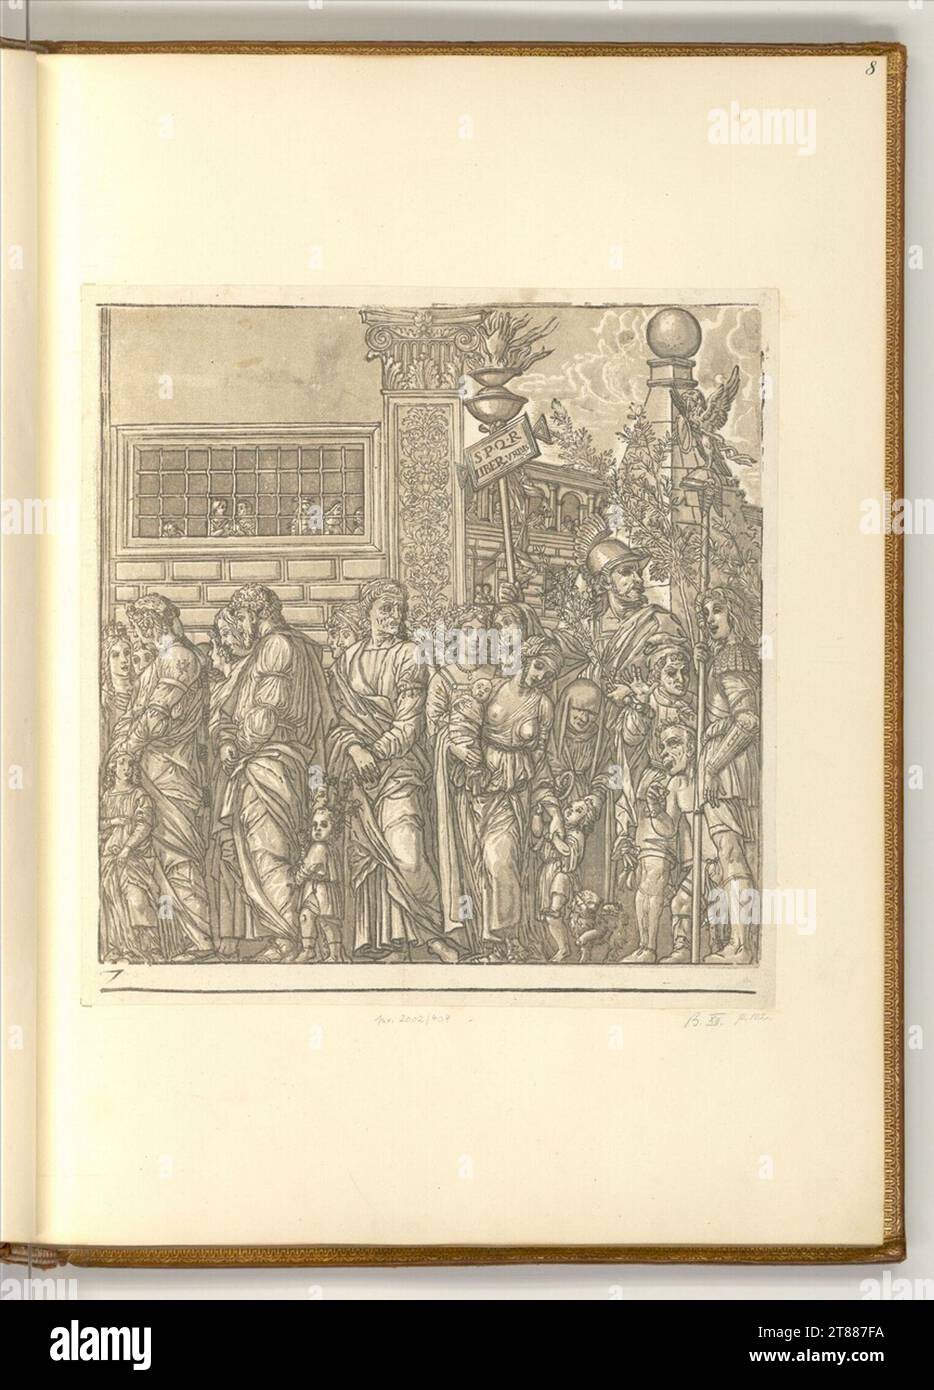 Andrea Andreani le triomphe de Jules César : feuille 7. Clair OBSCUR gravure sur bois de quatre plaques 1599, 1599 Banque D'Images